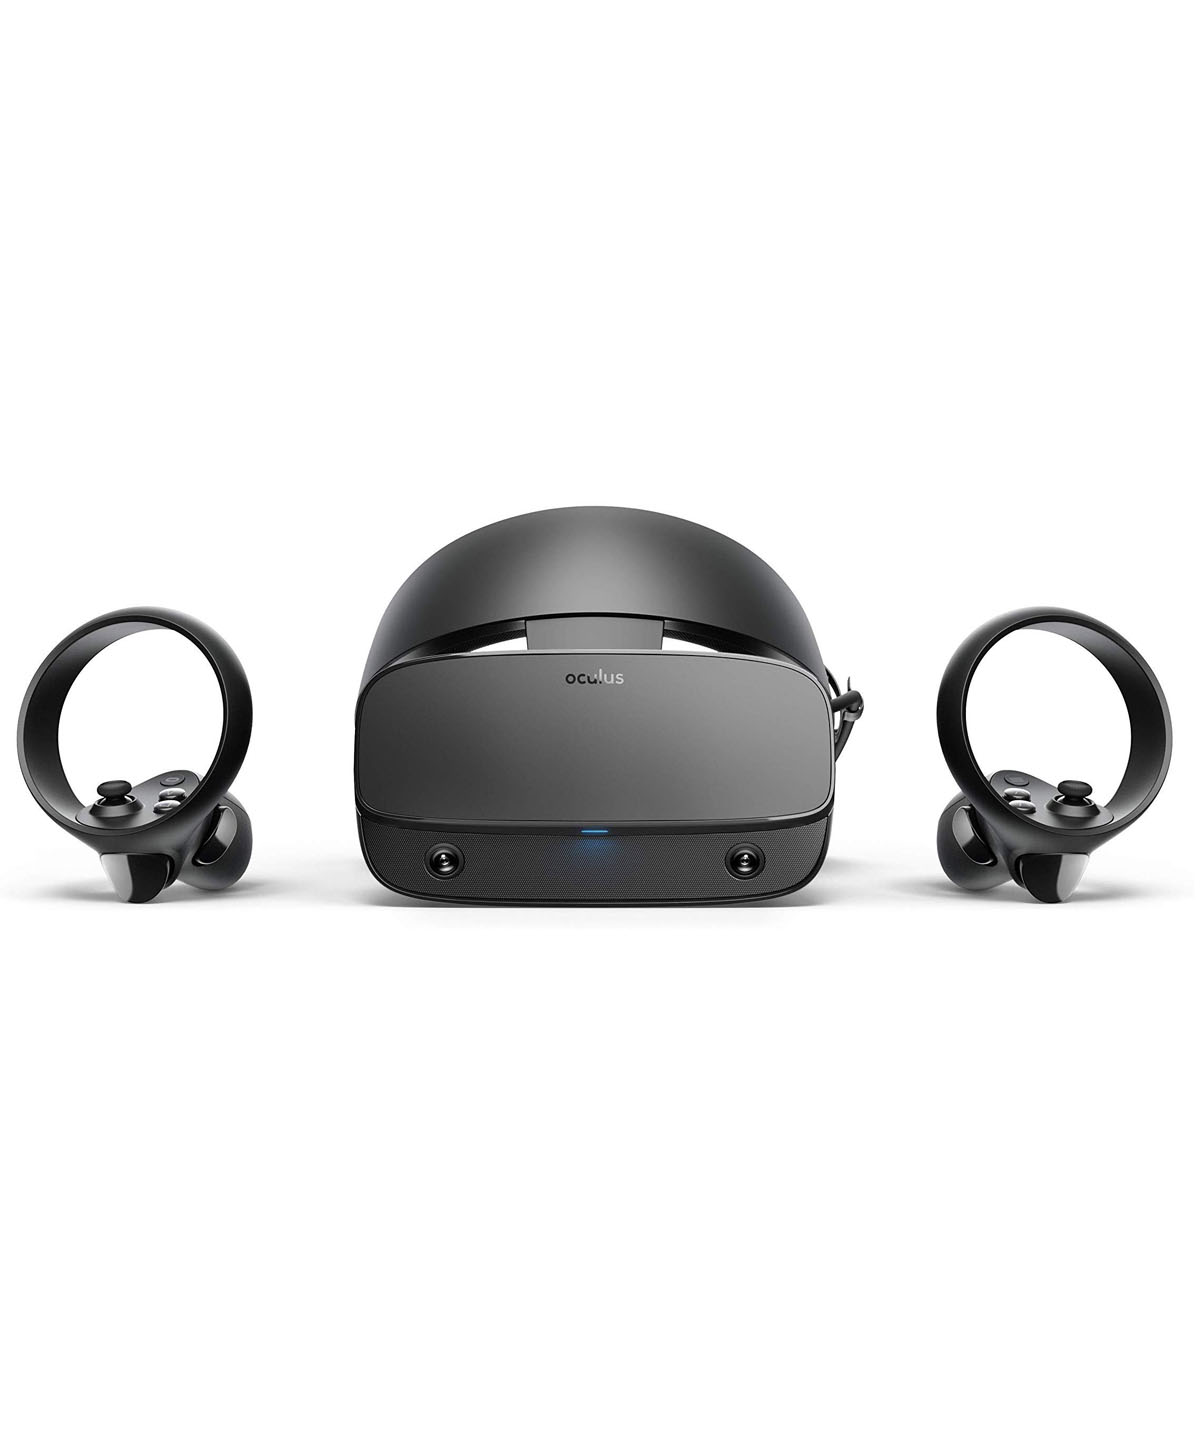 Kính thực tế ảo Oculus Rift S dành cho máy tính - Oculus RiftS for PC